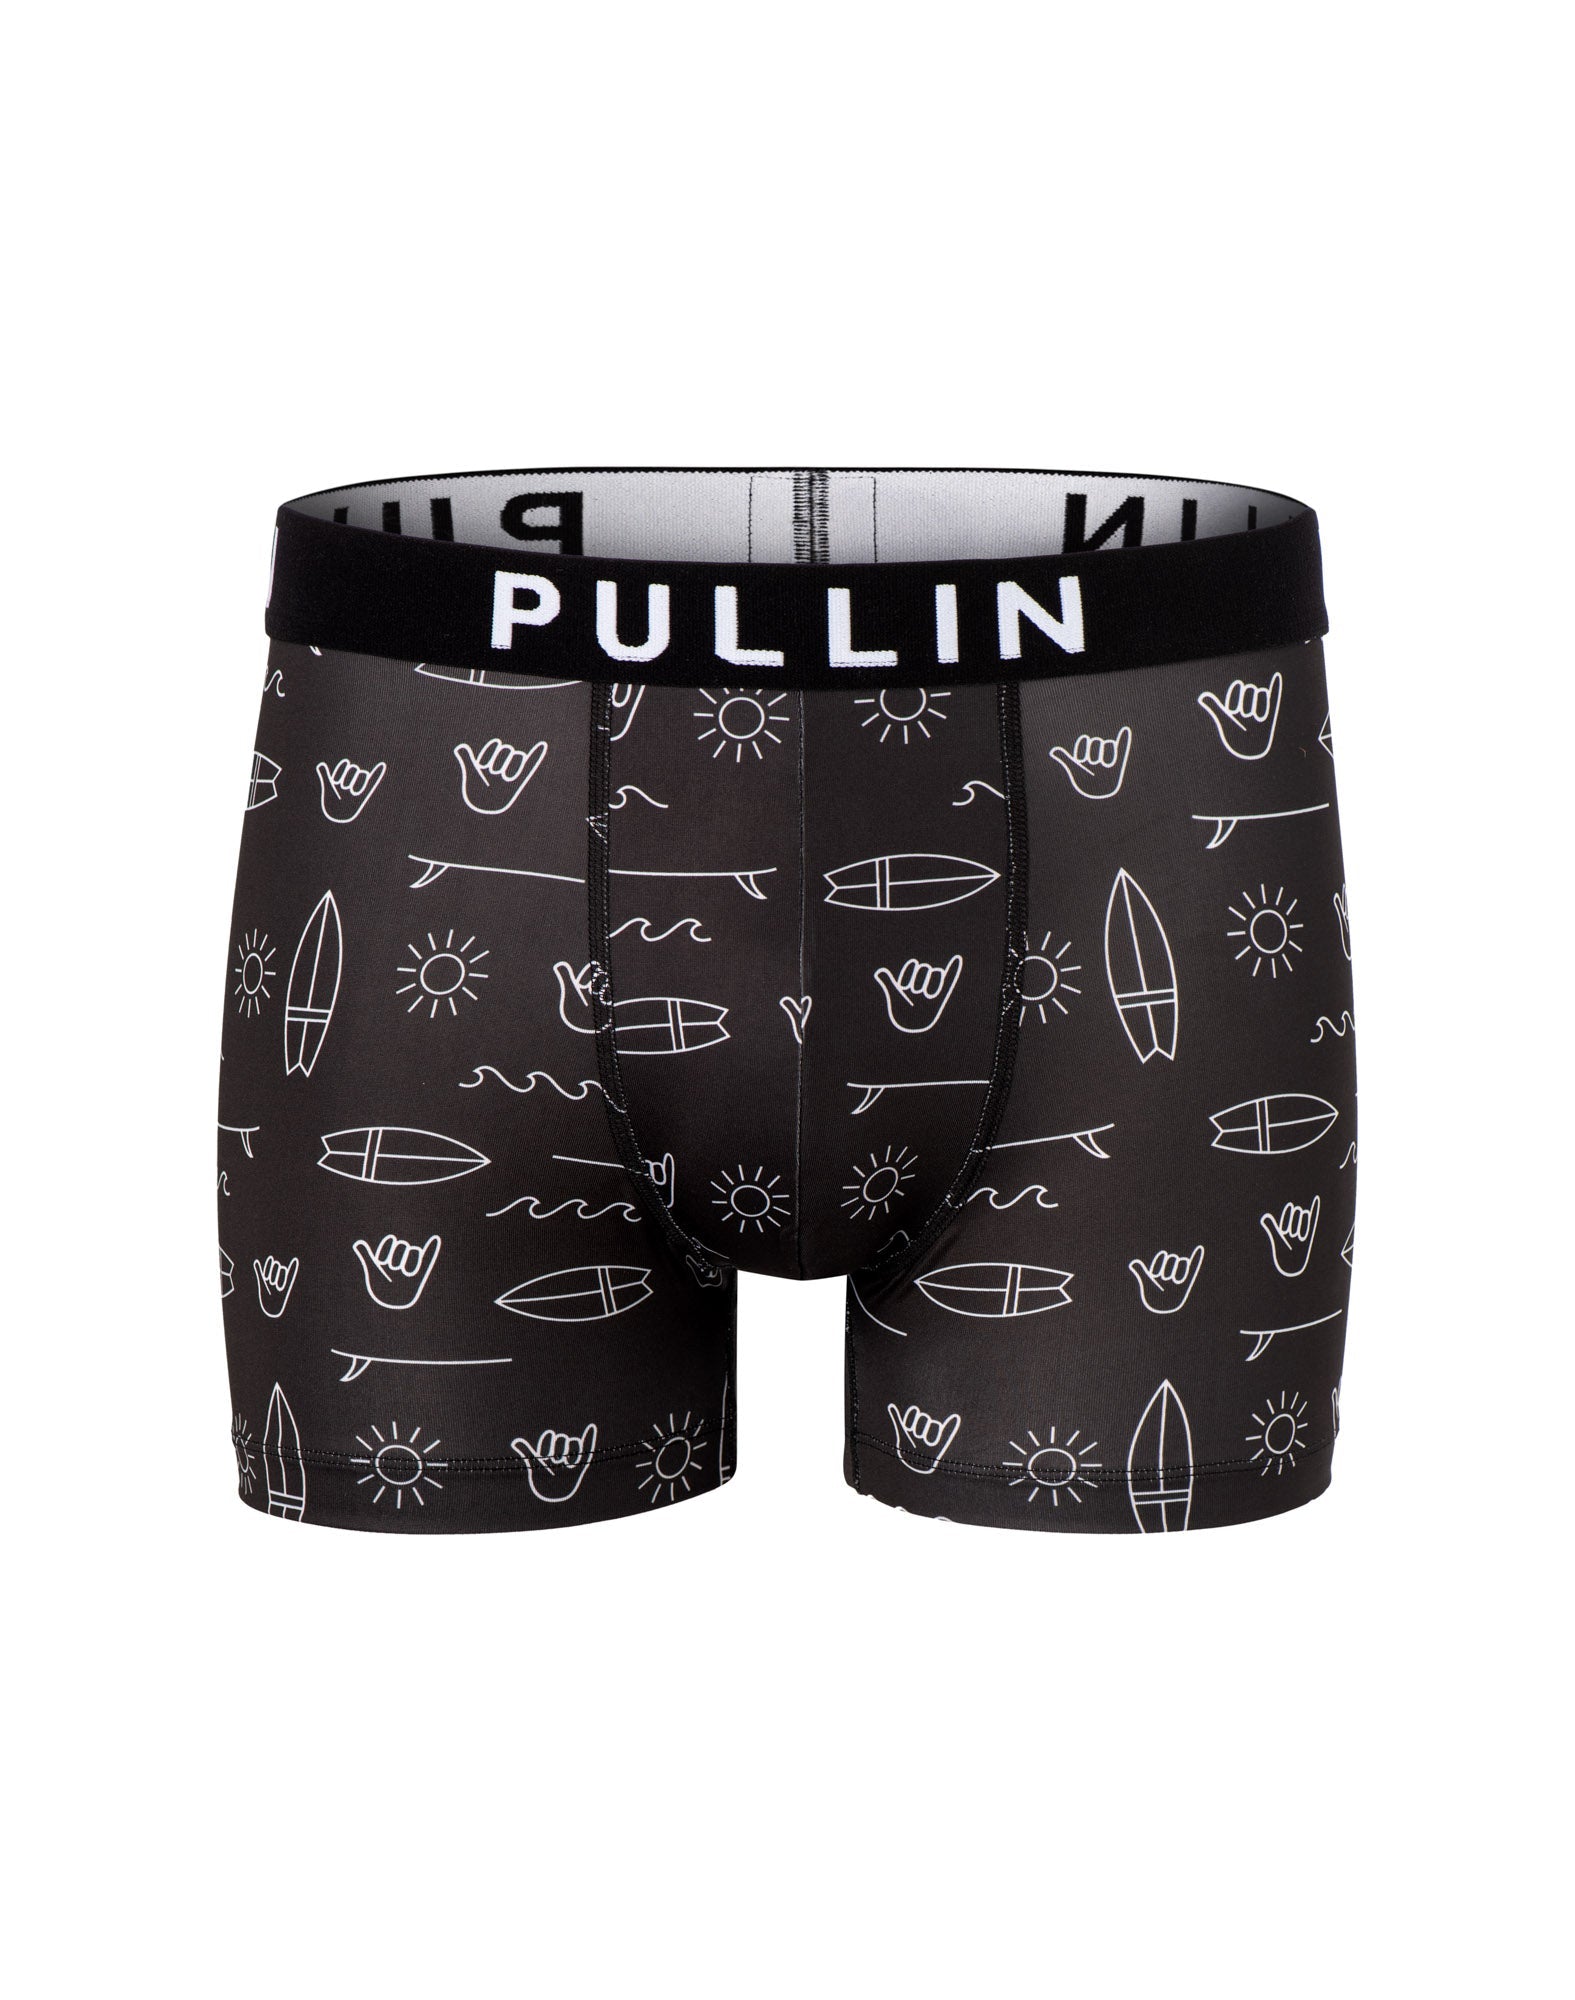 Sous-vêtement pour homme par Pullin | MAS ELEMENT | Boutique Vvög, vêtements mode pour hommes